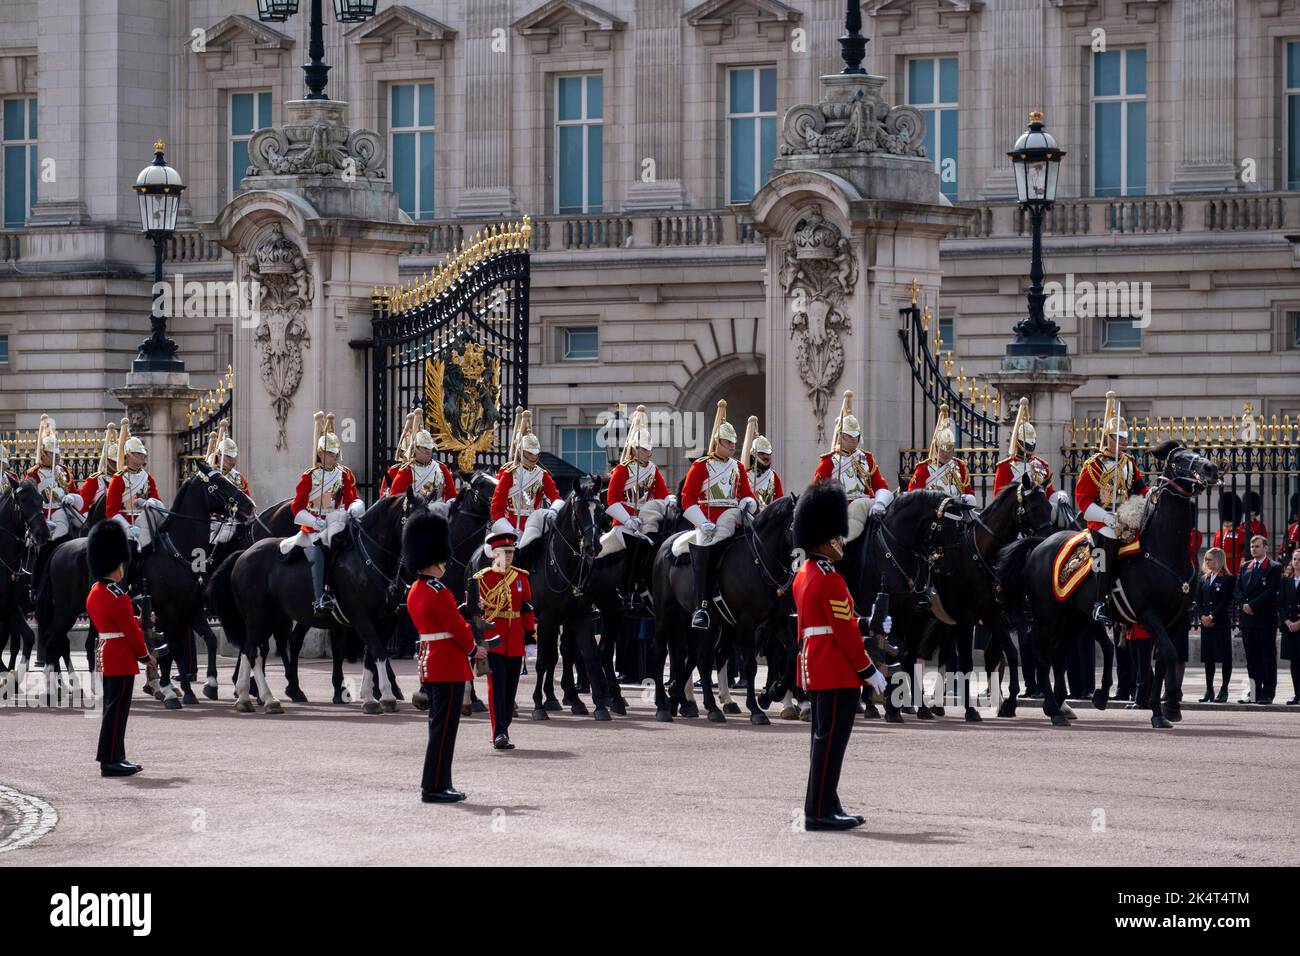 Salvavidas durante la procesión que pasa por el Palacio de Buckingham en el Funeral Estatal de la Reina Isabel II el 19th de septiembre de 2022 en Londres, Reino Unido. 11 días después de que se anunciara que la Reina había fallecido, cientos de miles de personas se reunieron en el centro de Londres para presenciar la procesión fúnebre. Foto de stock